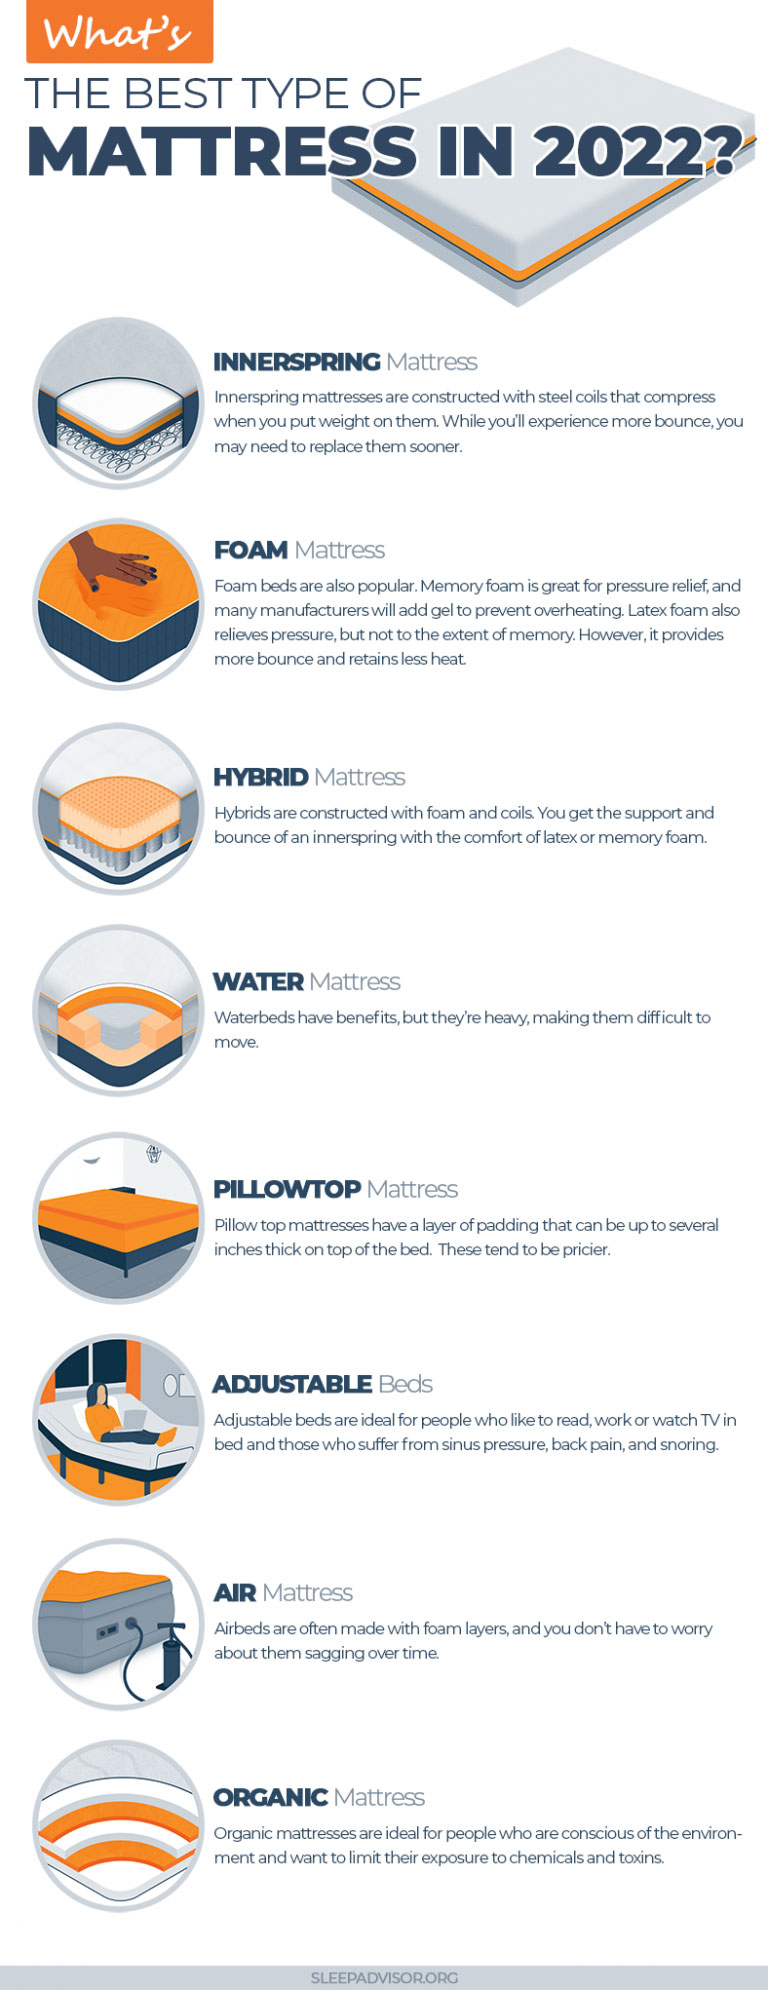 Types Of Mattress Materials